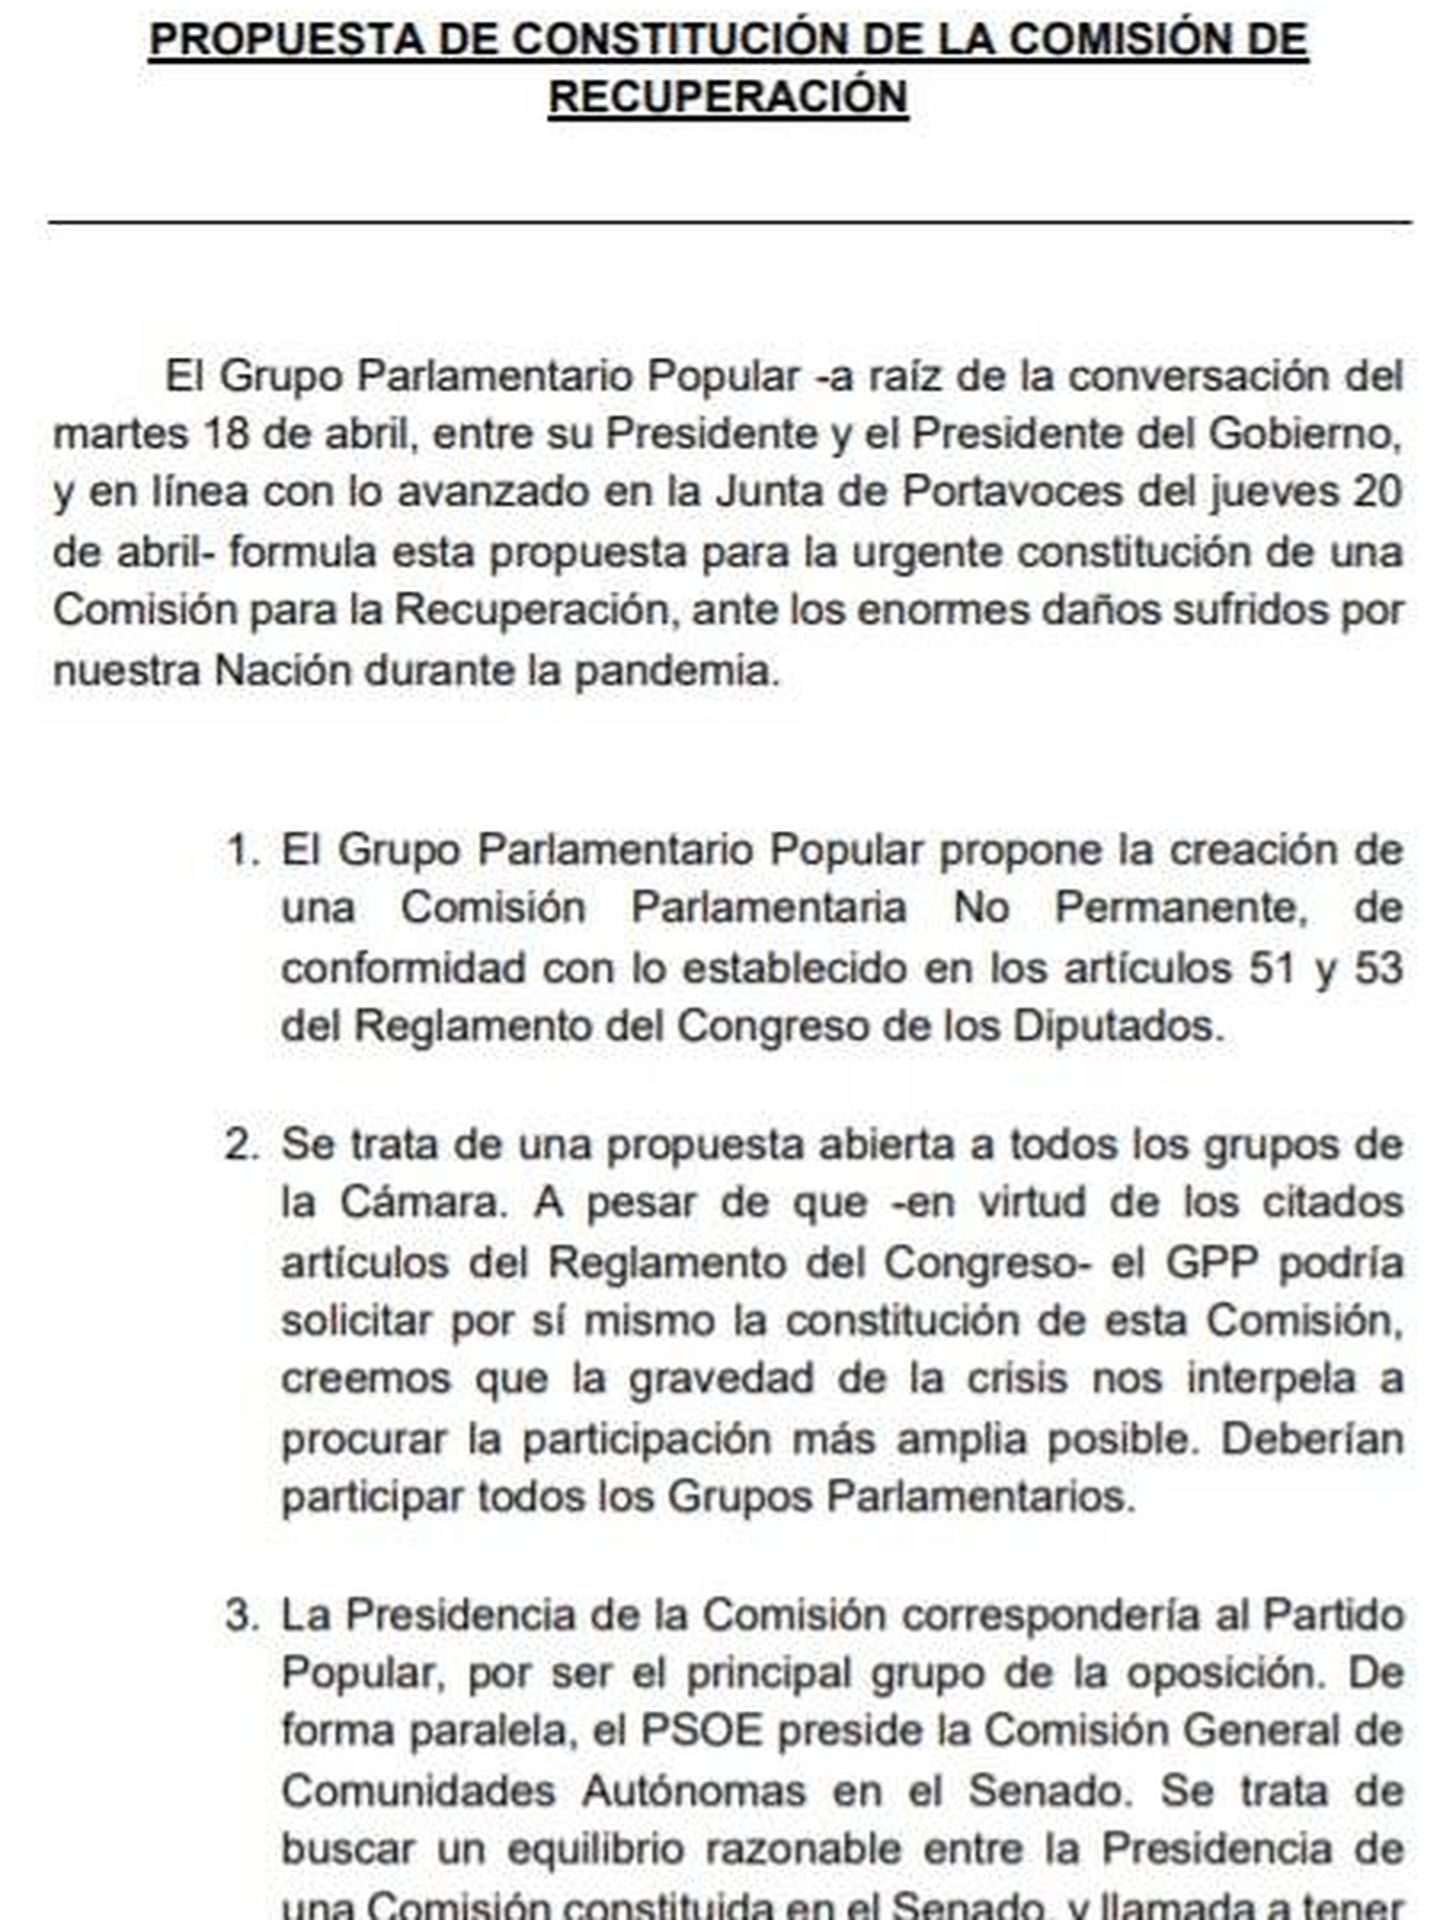 Consulte aquí en PDF la propuesta del PP de creación de la Comisión de Recuperación en el Congreso.